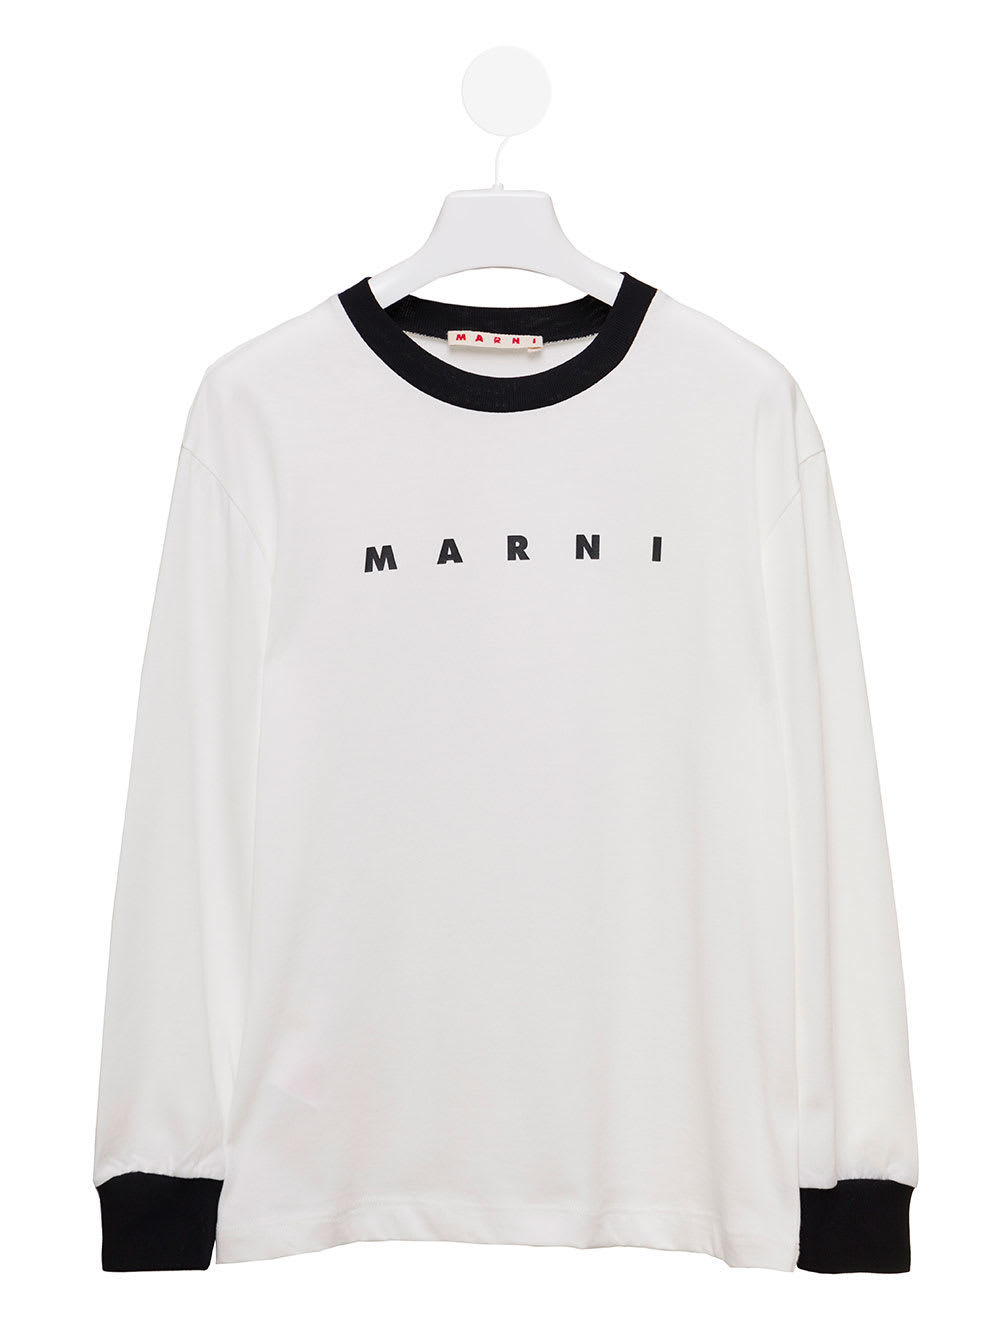 Marni Kids Baby Girls White Long Sleeve Sweatshirt